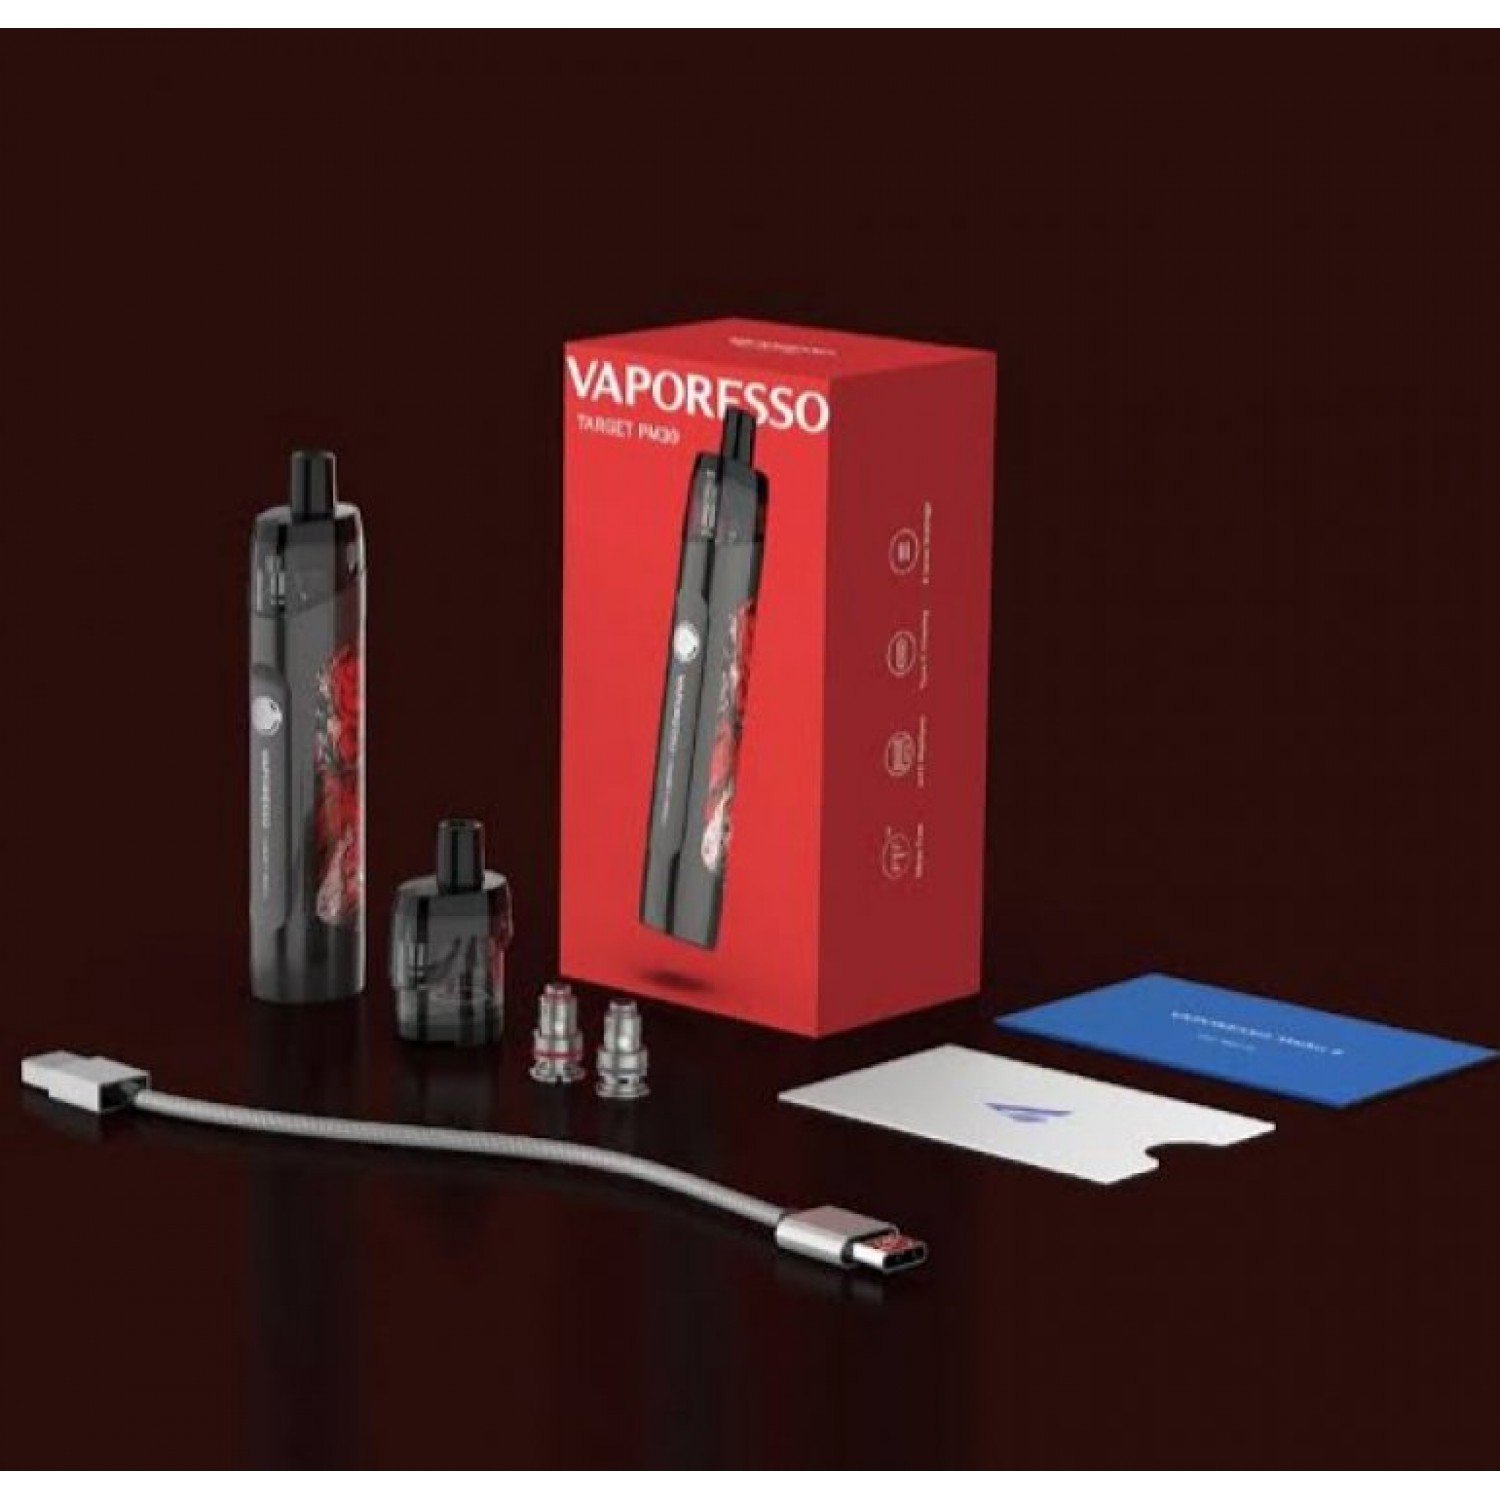 Vaporesso - Target PM30 1200 Mah Pod Mod Elektronik Sigara Kit